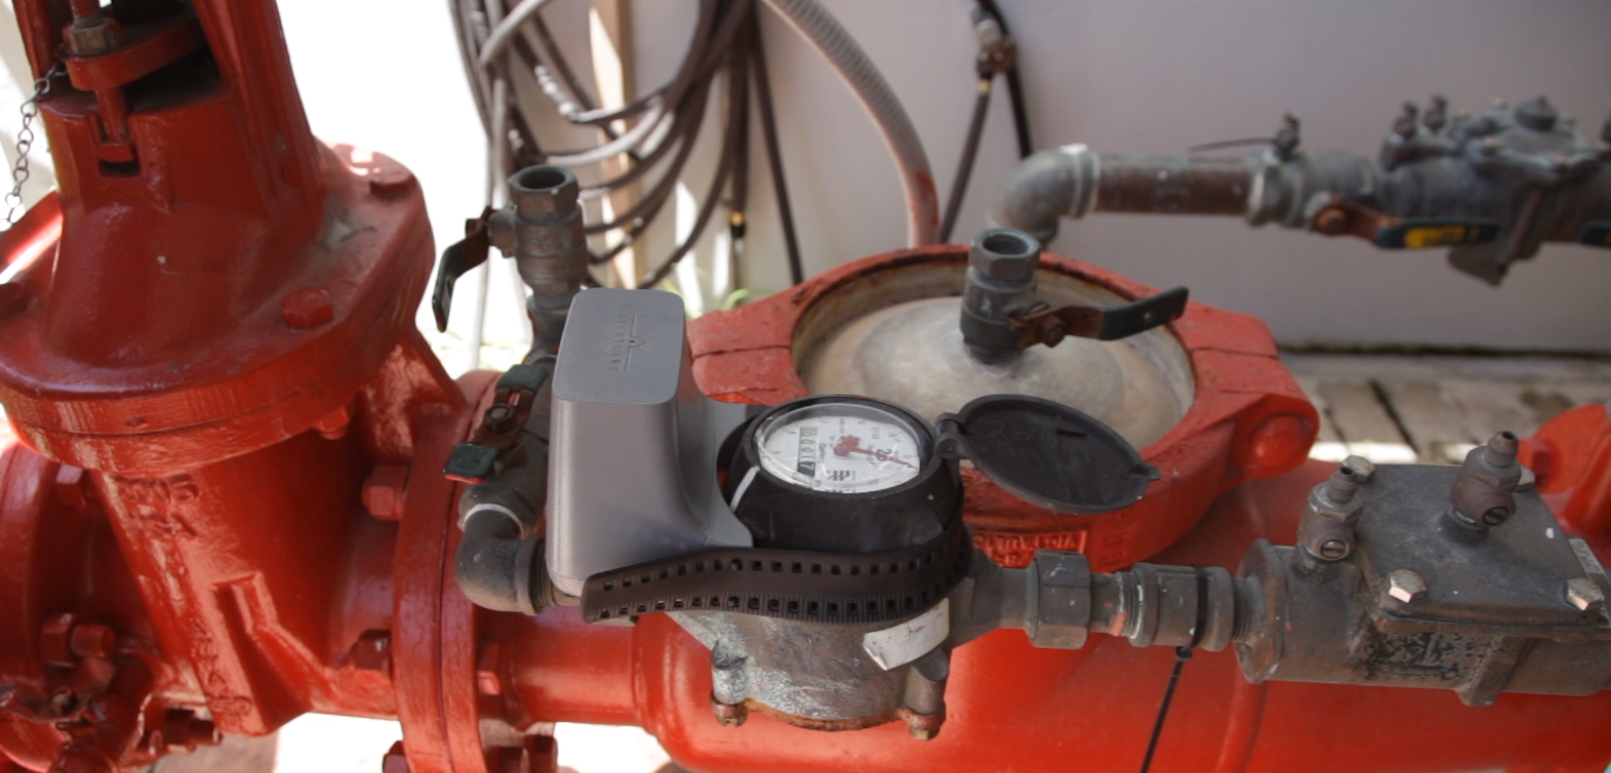 Primer plano de un hidrante con indicadores de presión y válvulas para mantenimiento